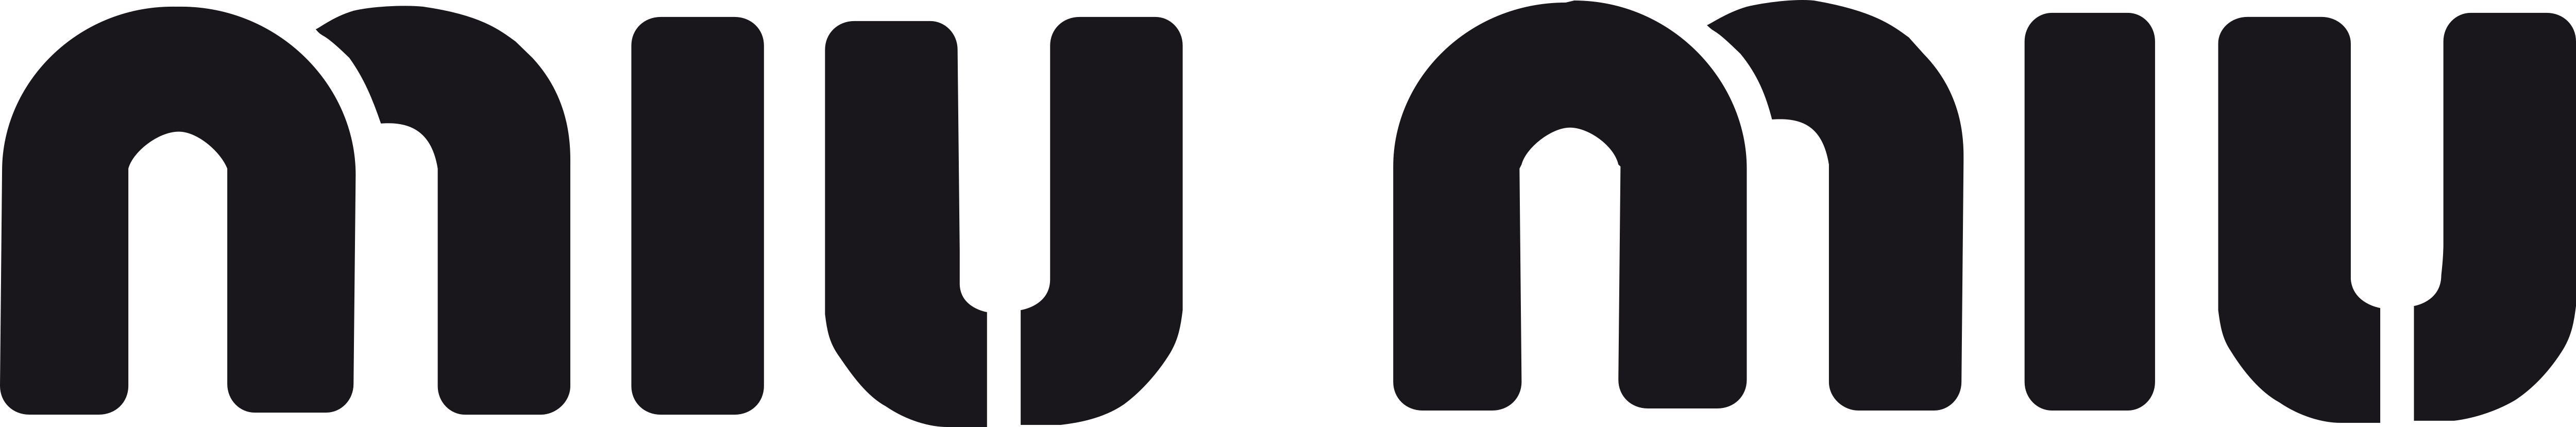 Miu Miu – Logos Download